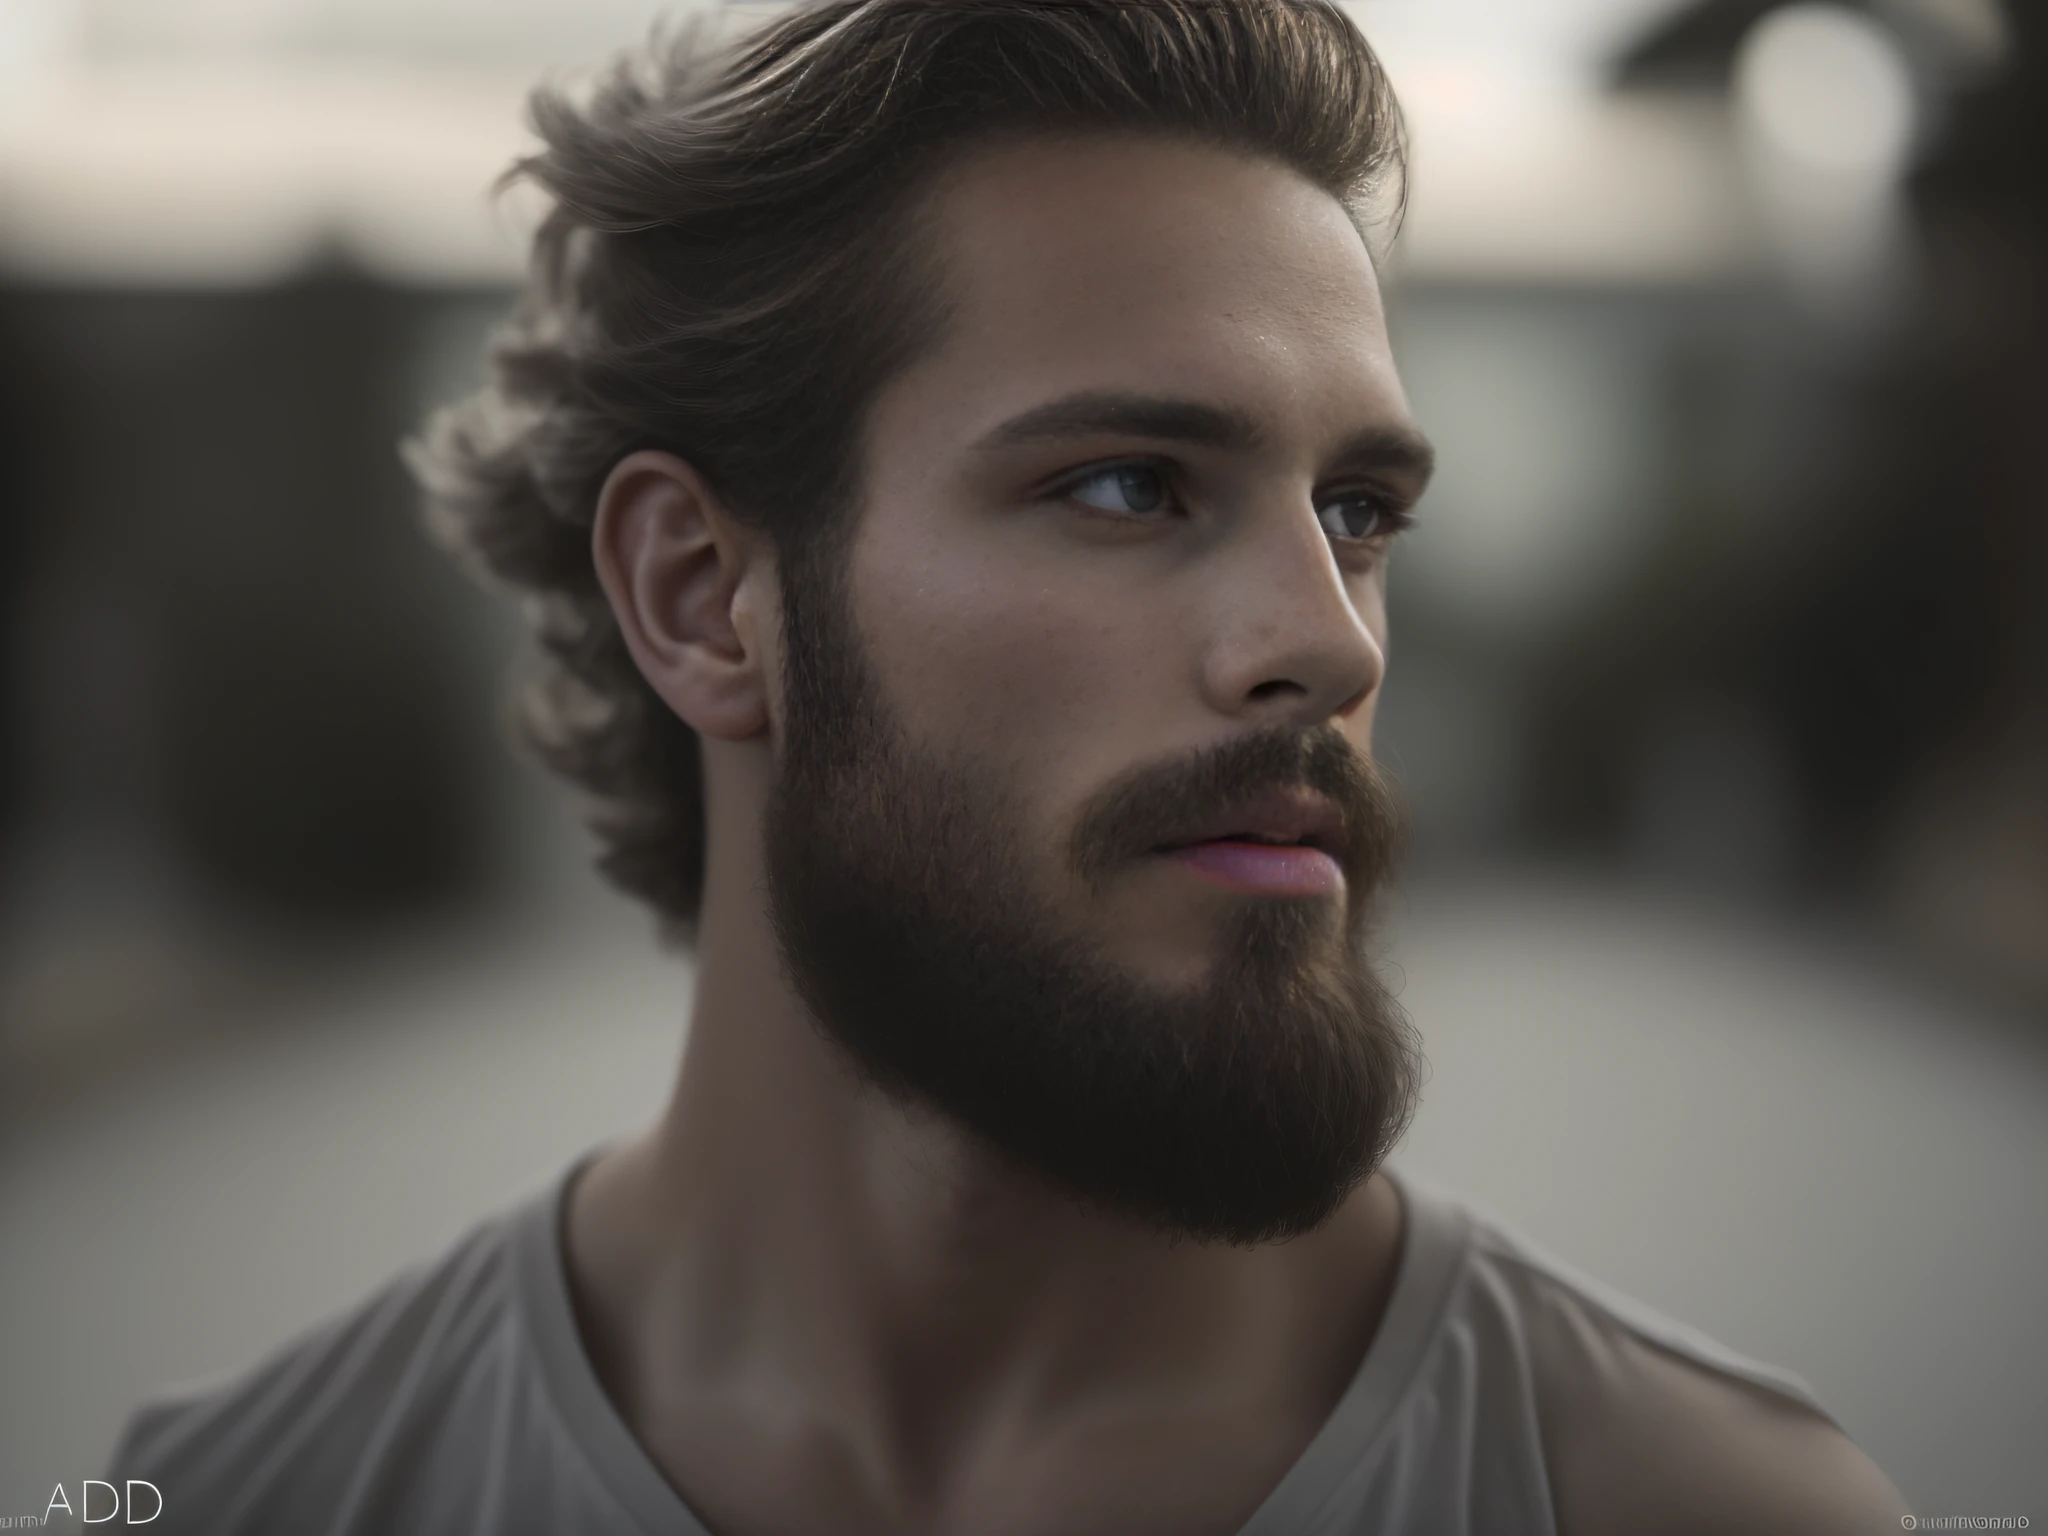 Un hombre de 25 años de Suecia, masculino, barbado, barba clave, modelo, cuerpo entero, pose elegante, muy bonito, mirando a la camara, imagen detallada, uhd, 8k, bien iluminado, grano de película